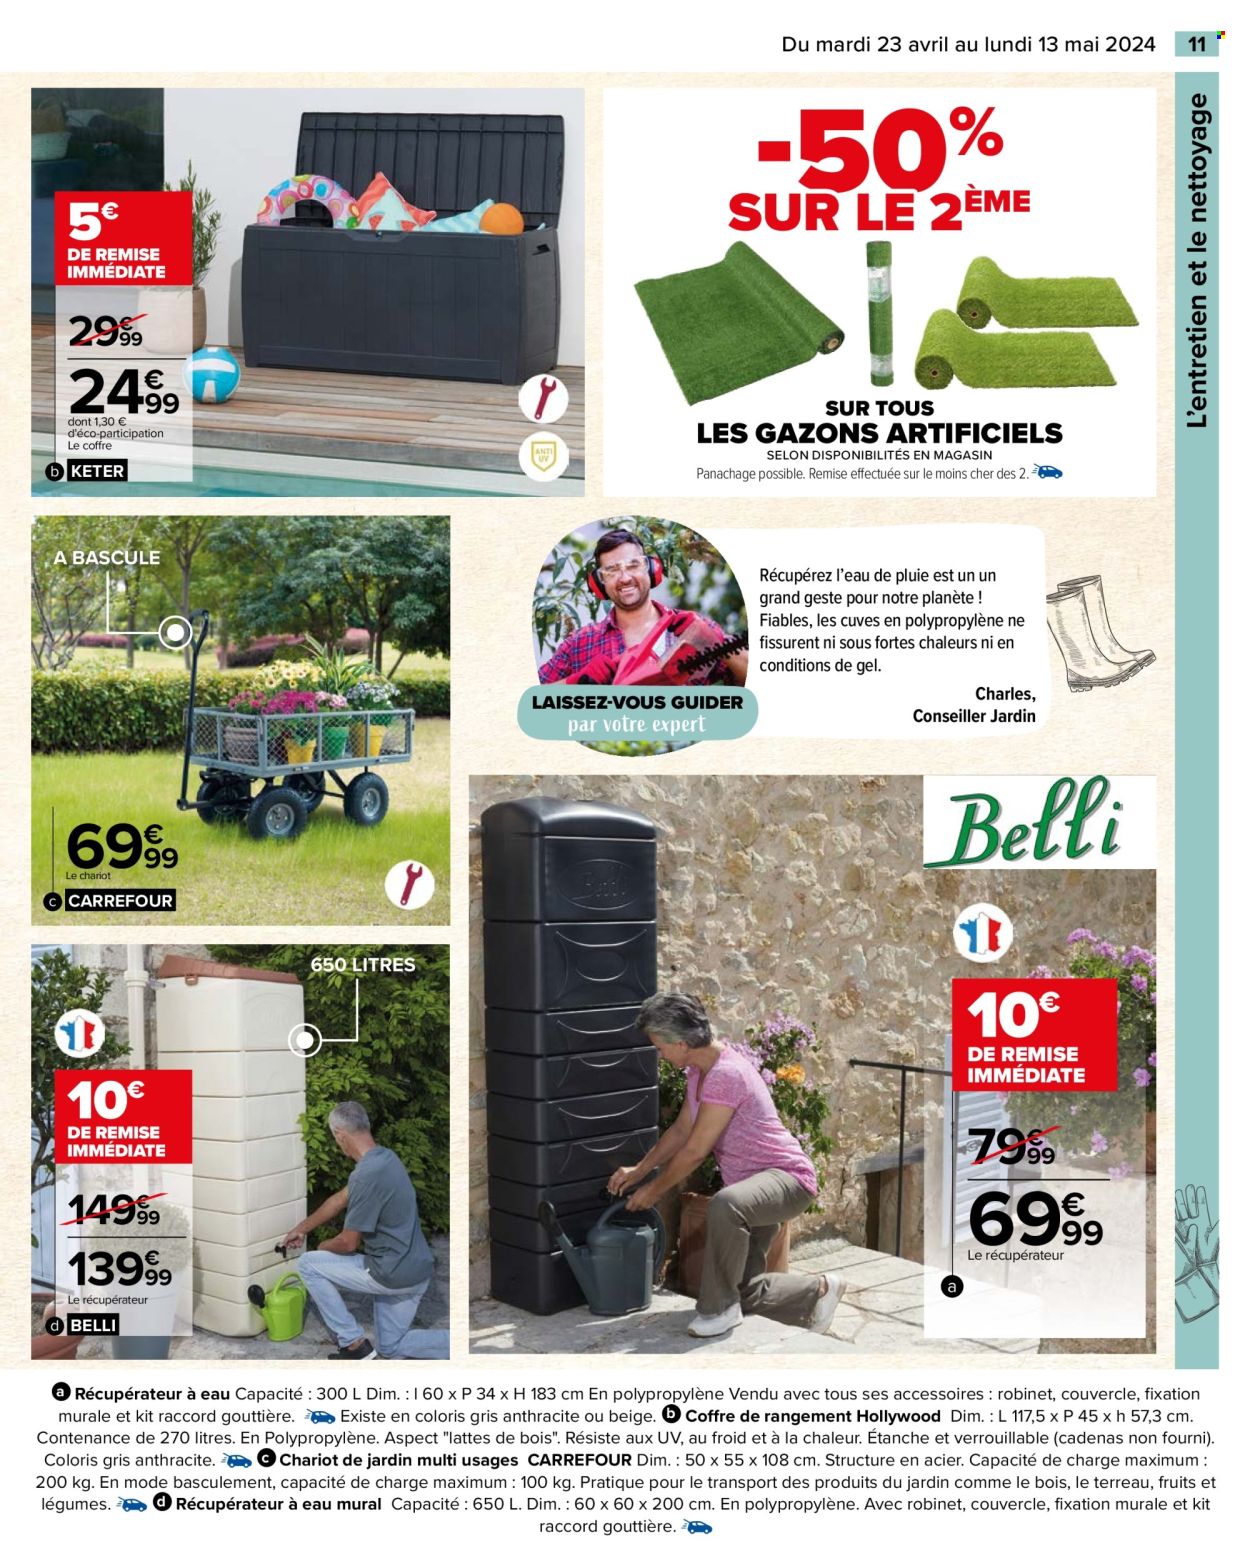 thumbnail - Catalogue Carrefour Hypermarchés - 23/04/2024 - 13/05/2024 - Produits soldés - coffret, coffre, multi usages, chariot, récupérateur à eau mural. Page 13.